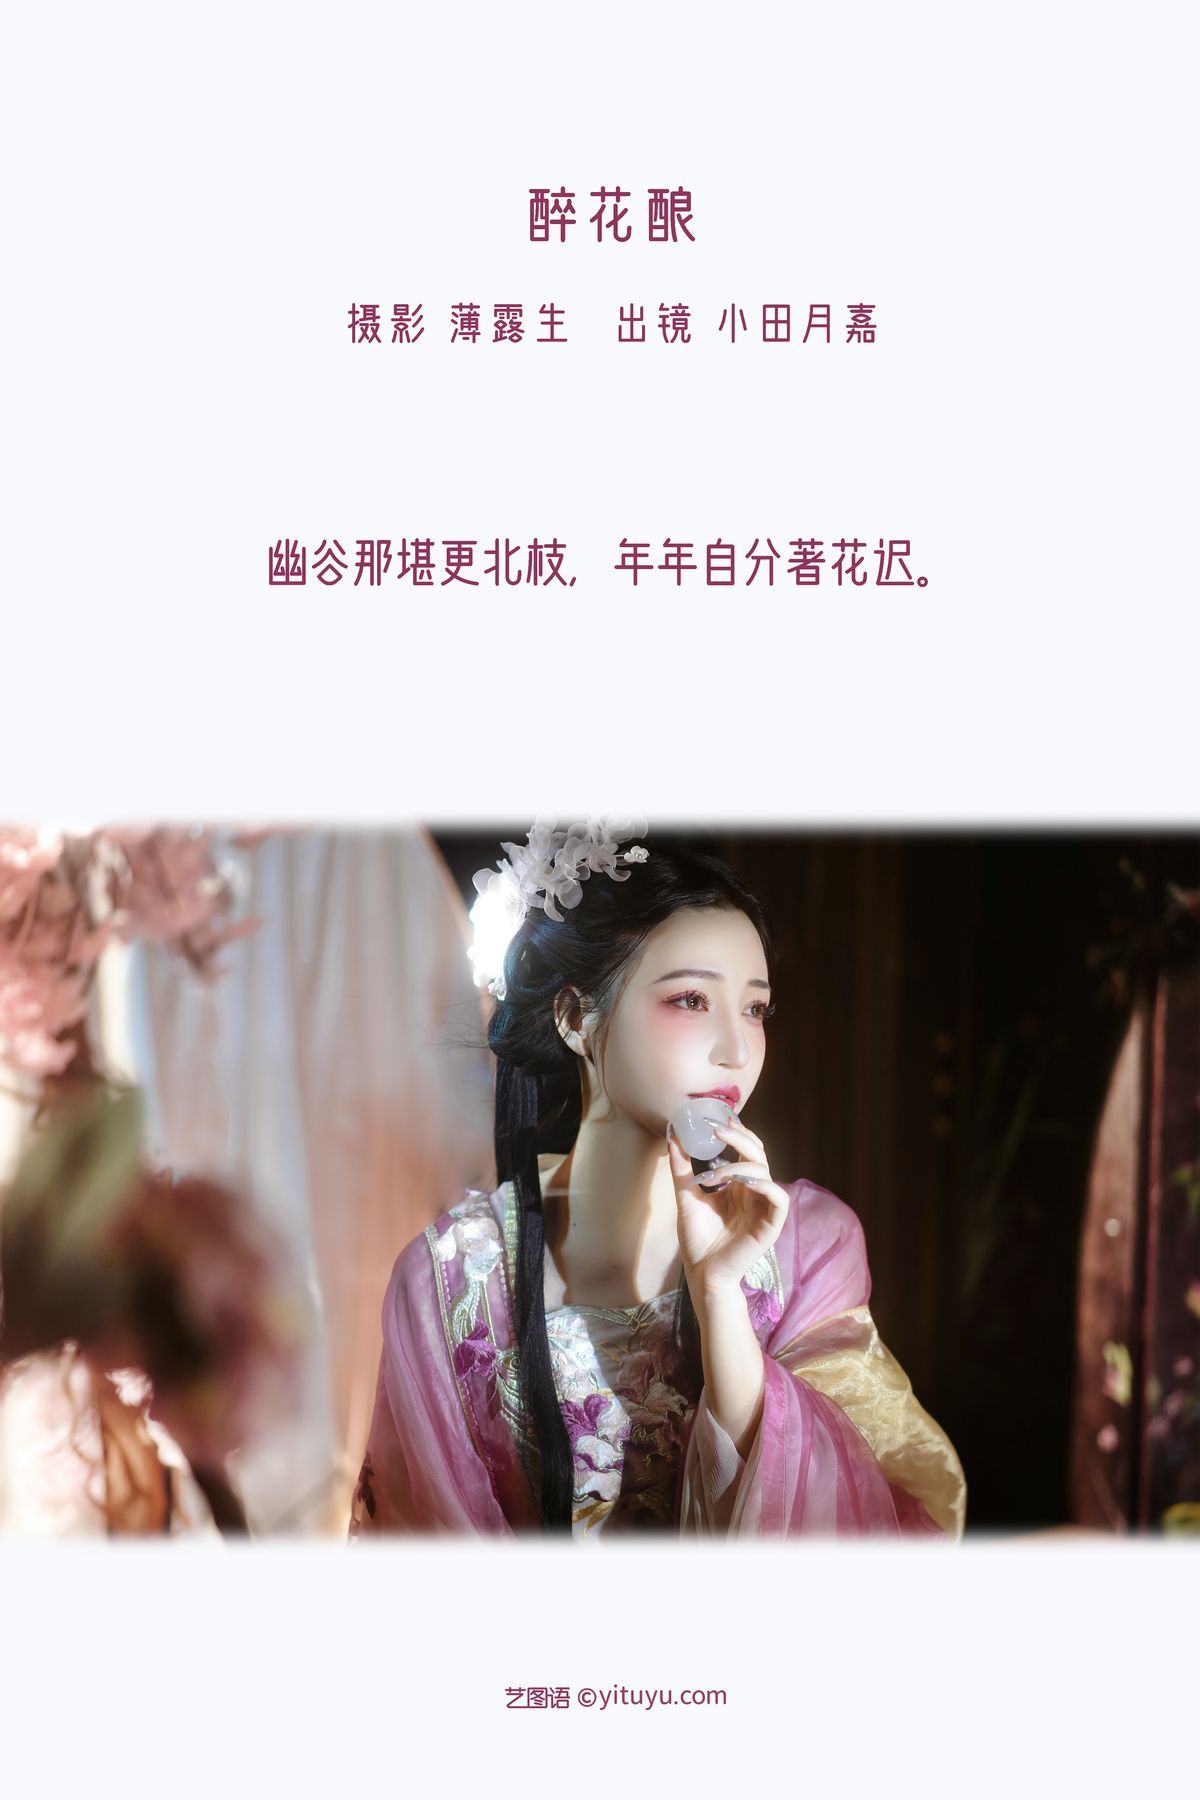 YiTuYu艺图语 Vol 3074 Xiao Tian Yue Jia 0001 2696847165.jpg